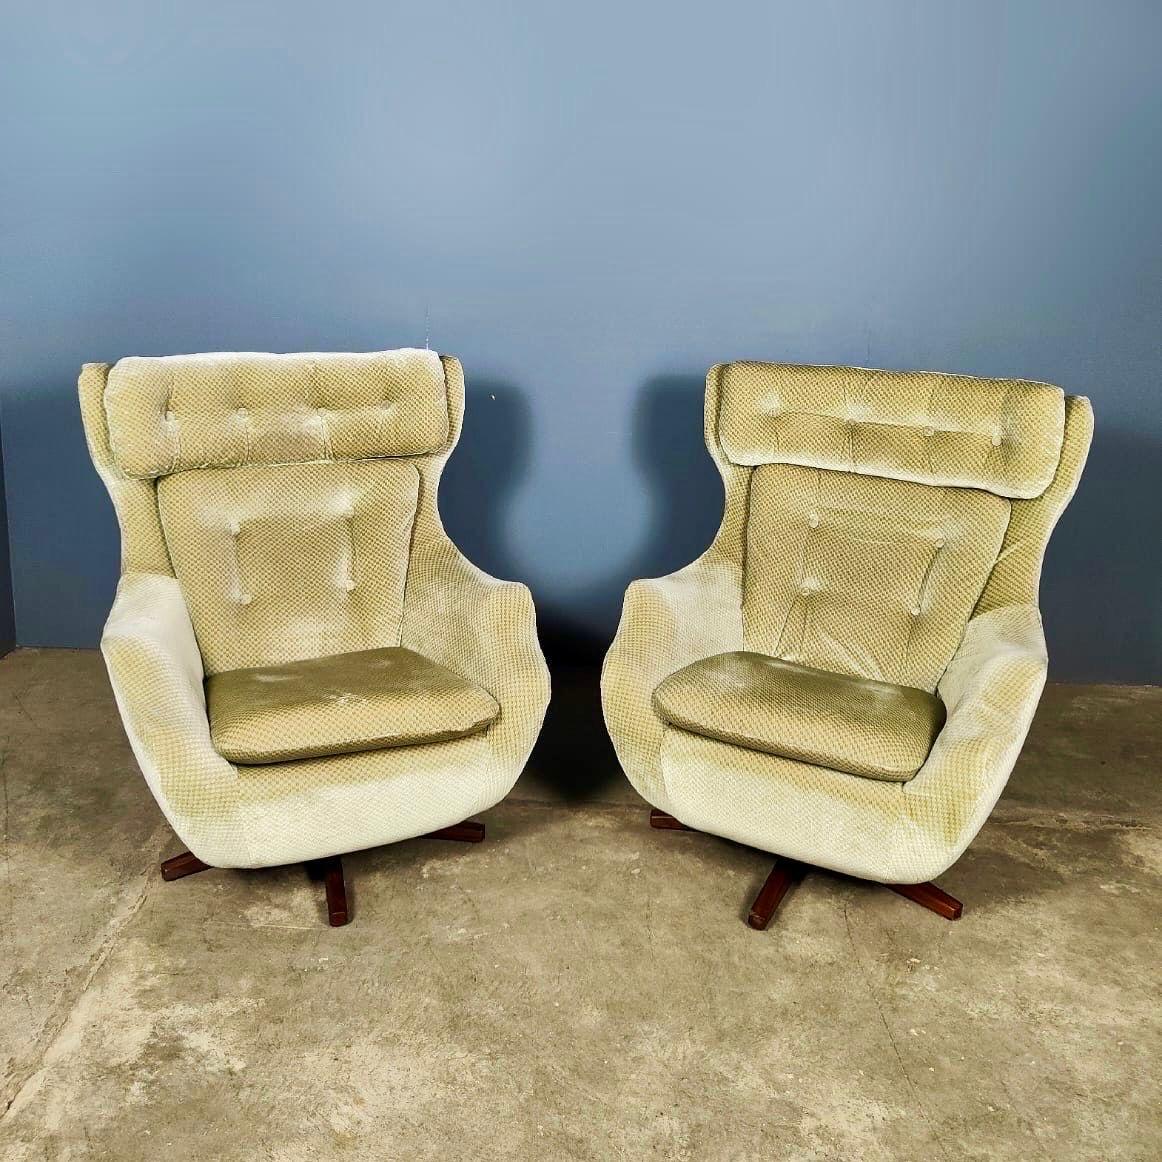 Nouveau stock ✅

Paire de chaises longues Parker Knoll Statesman Swivel Egg Lounge Chairs Mid Century Vintage Retro MCM

Lancée en 1969, la célèbre chaise Statesman de Parker Knoll est véritablement le roi des chaises à œuf avec son design